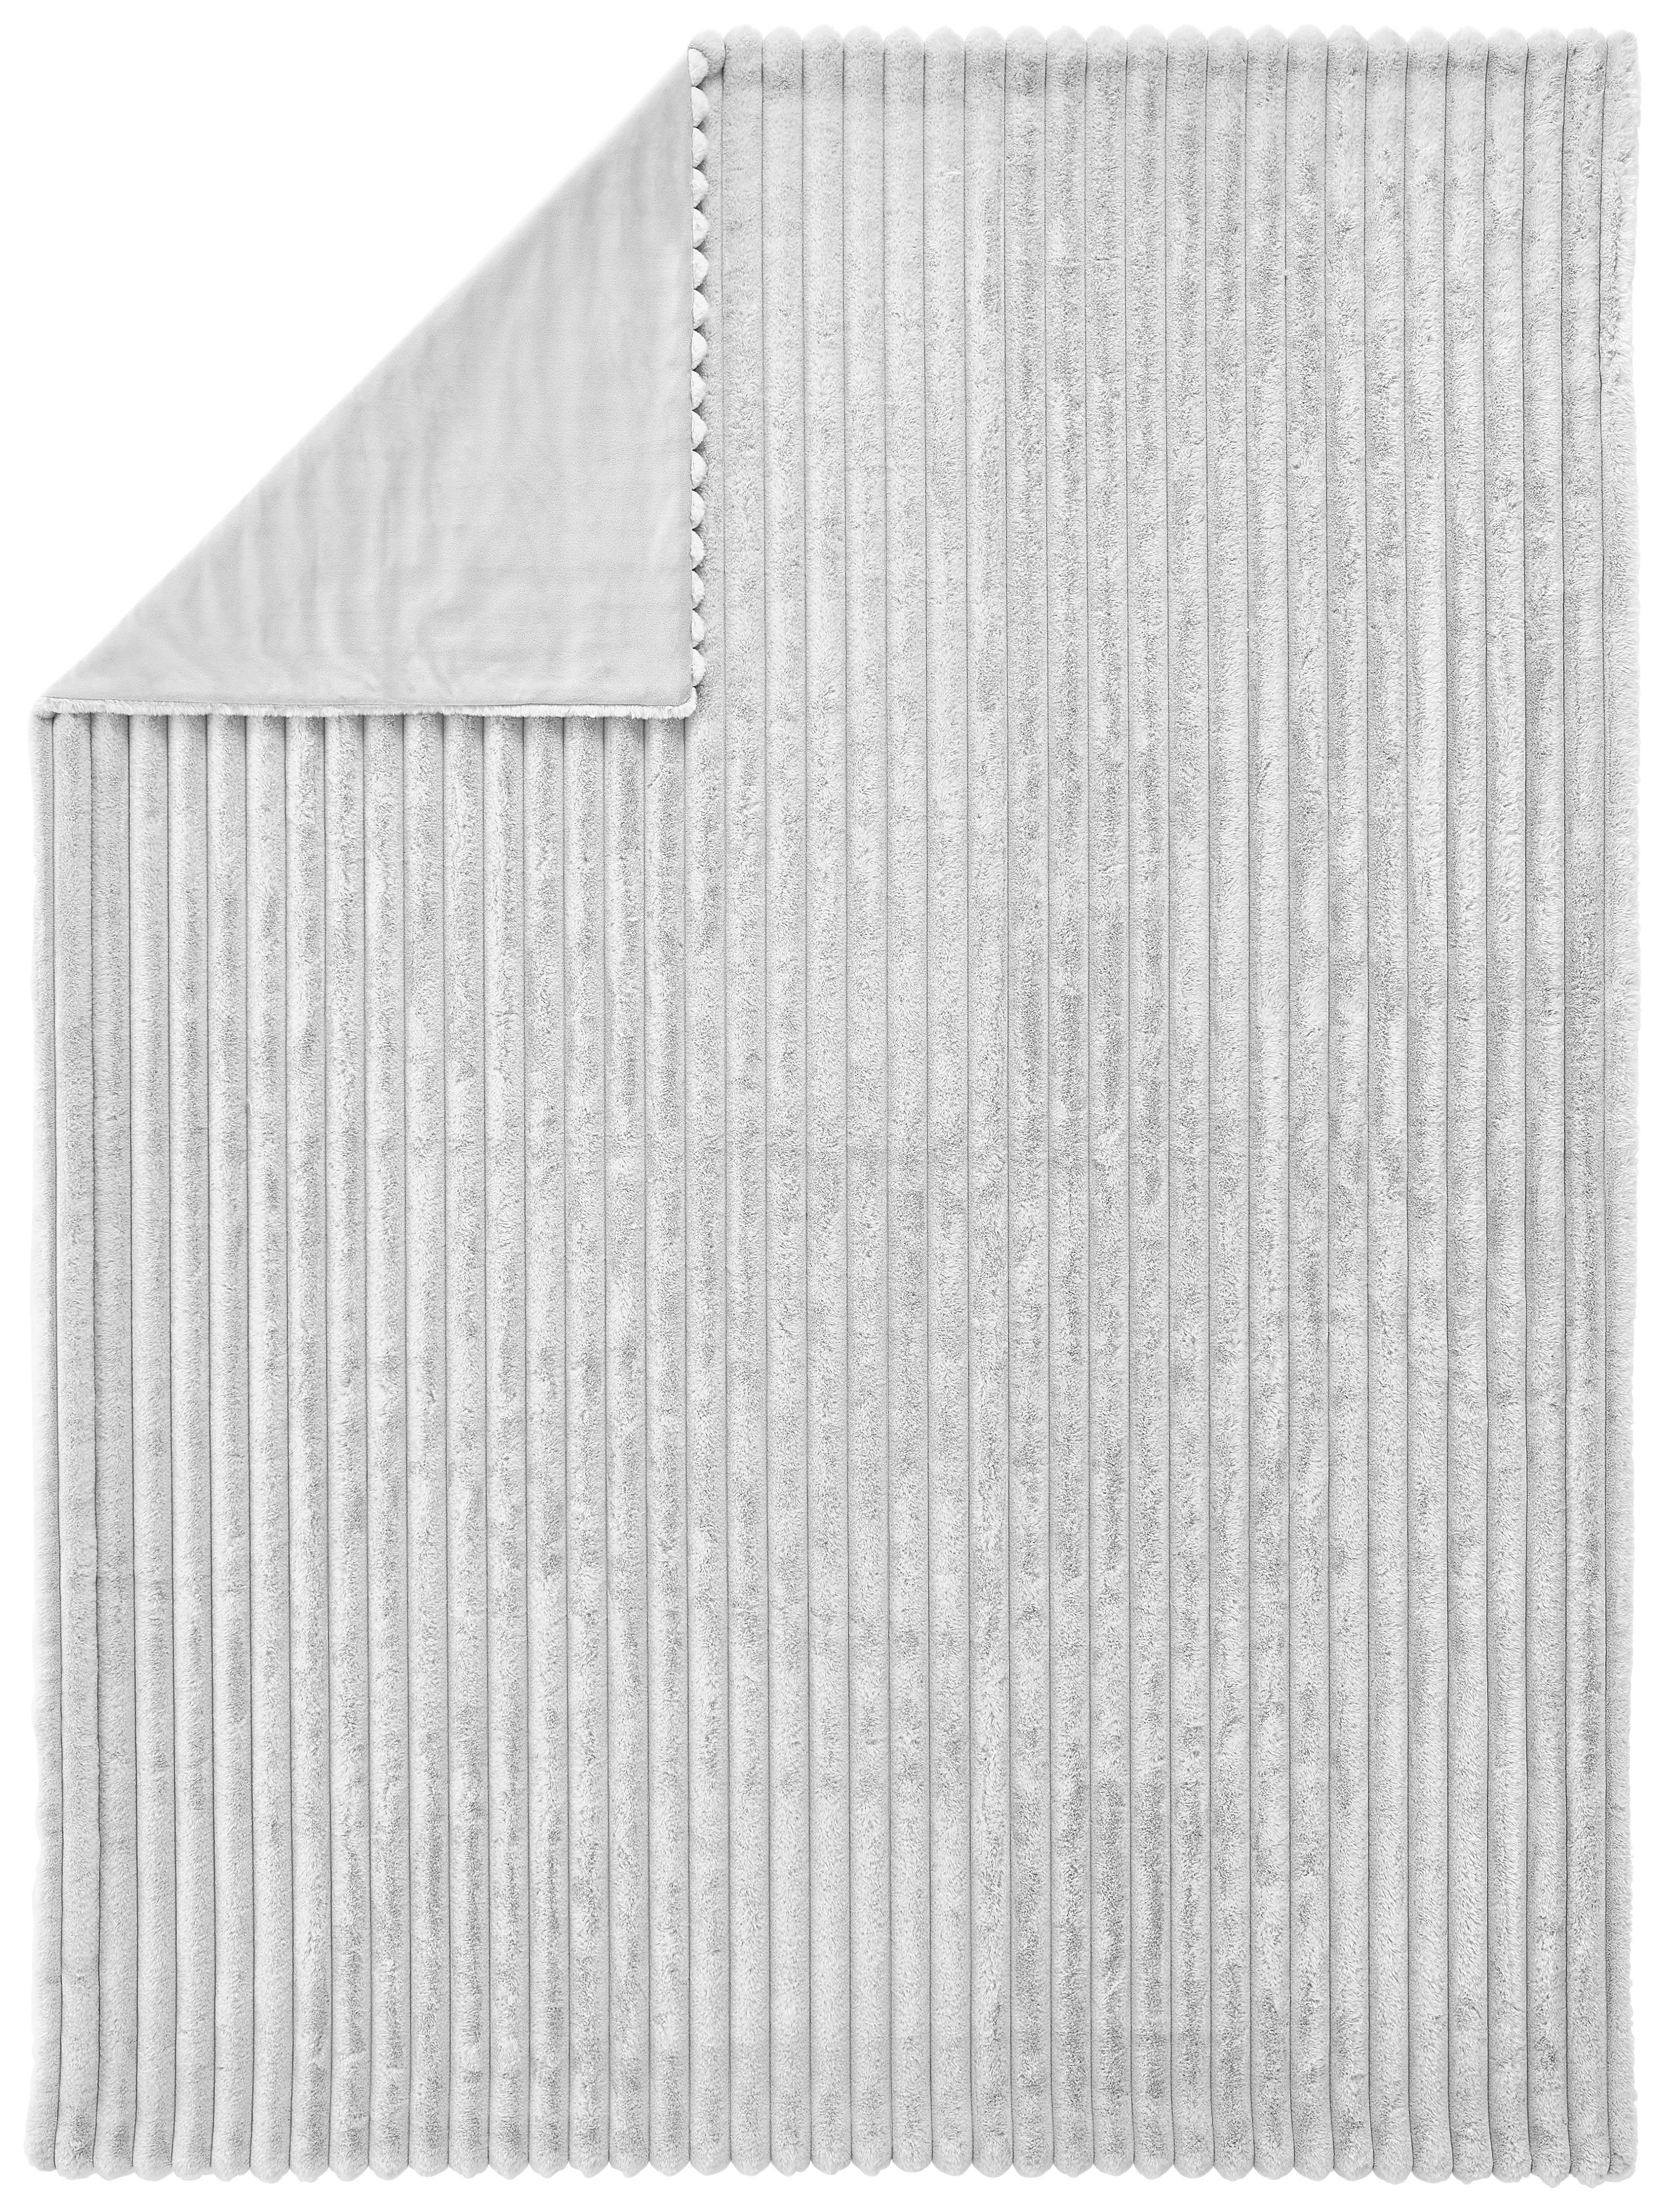 FLEECEDECKE Zuzana 150/200 cm  - Silberfarben, KONVENTIONELL, Textil (150/200cm) - Novel